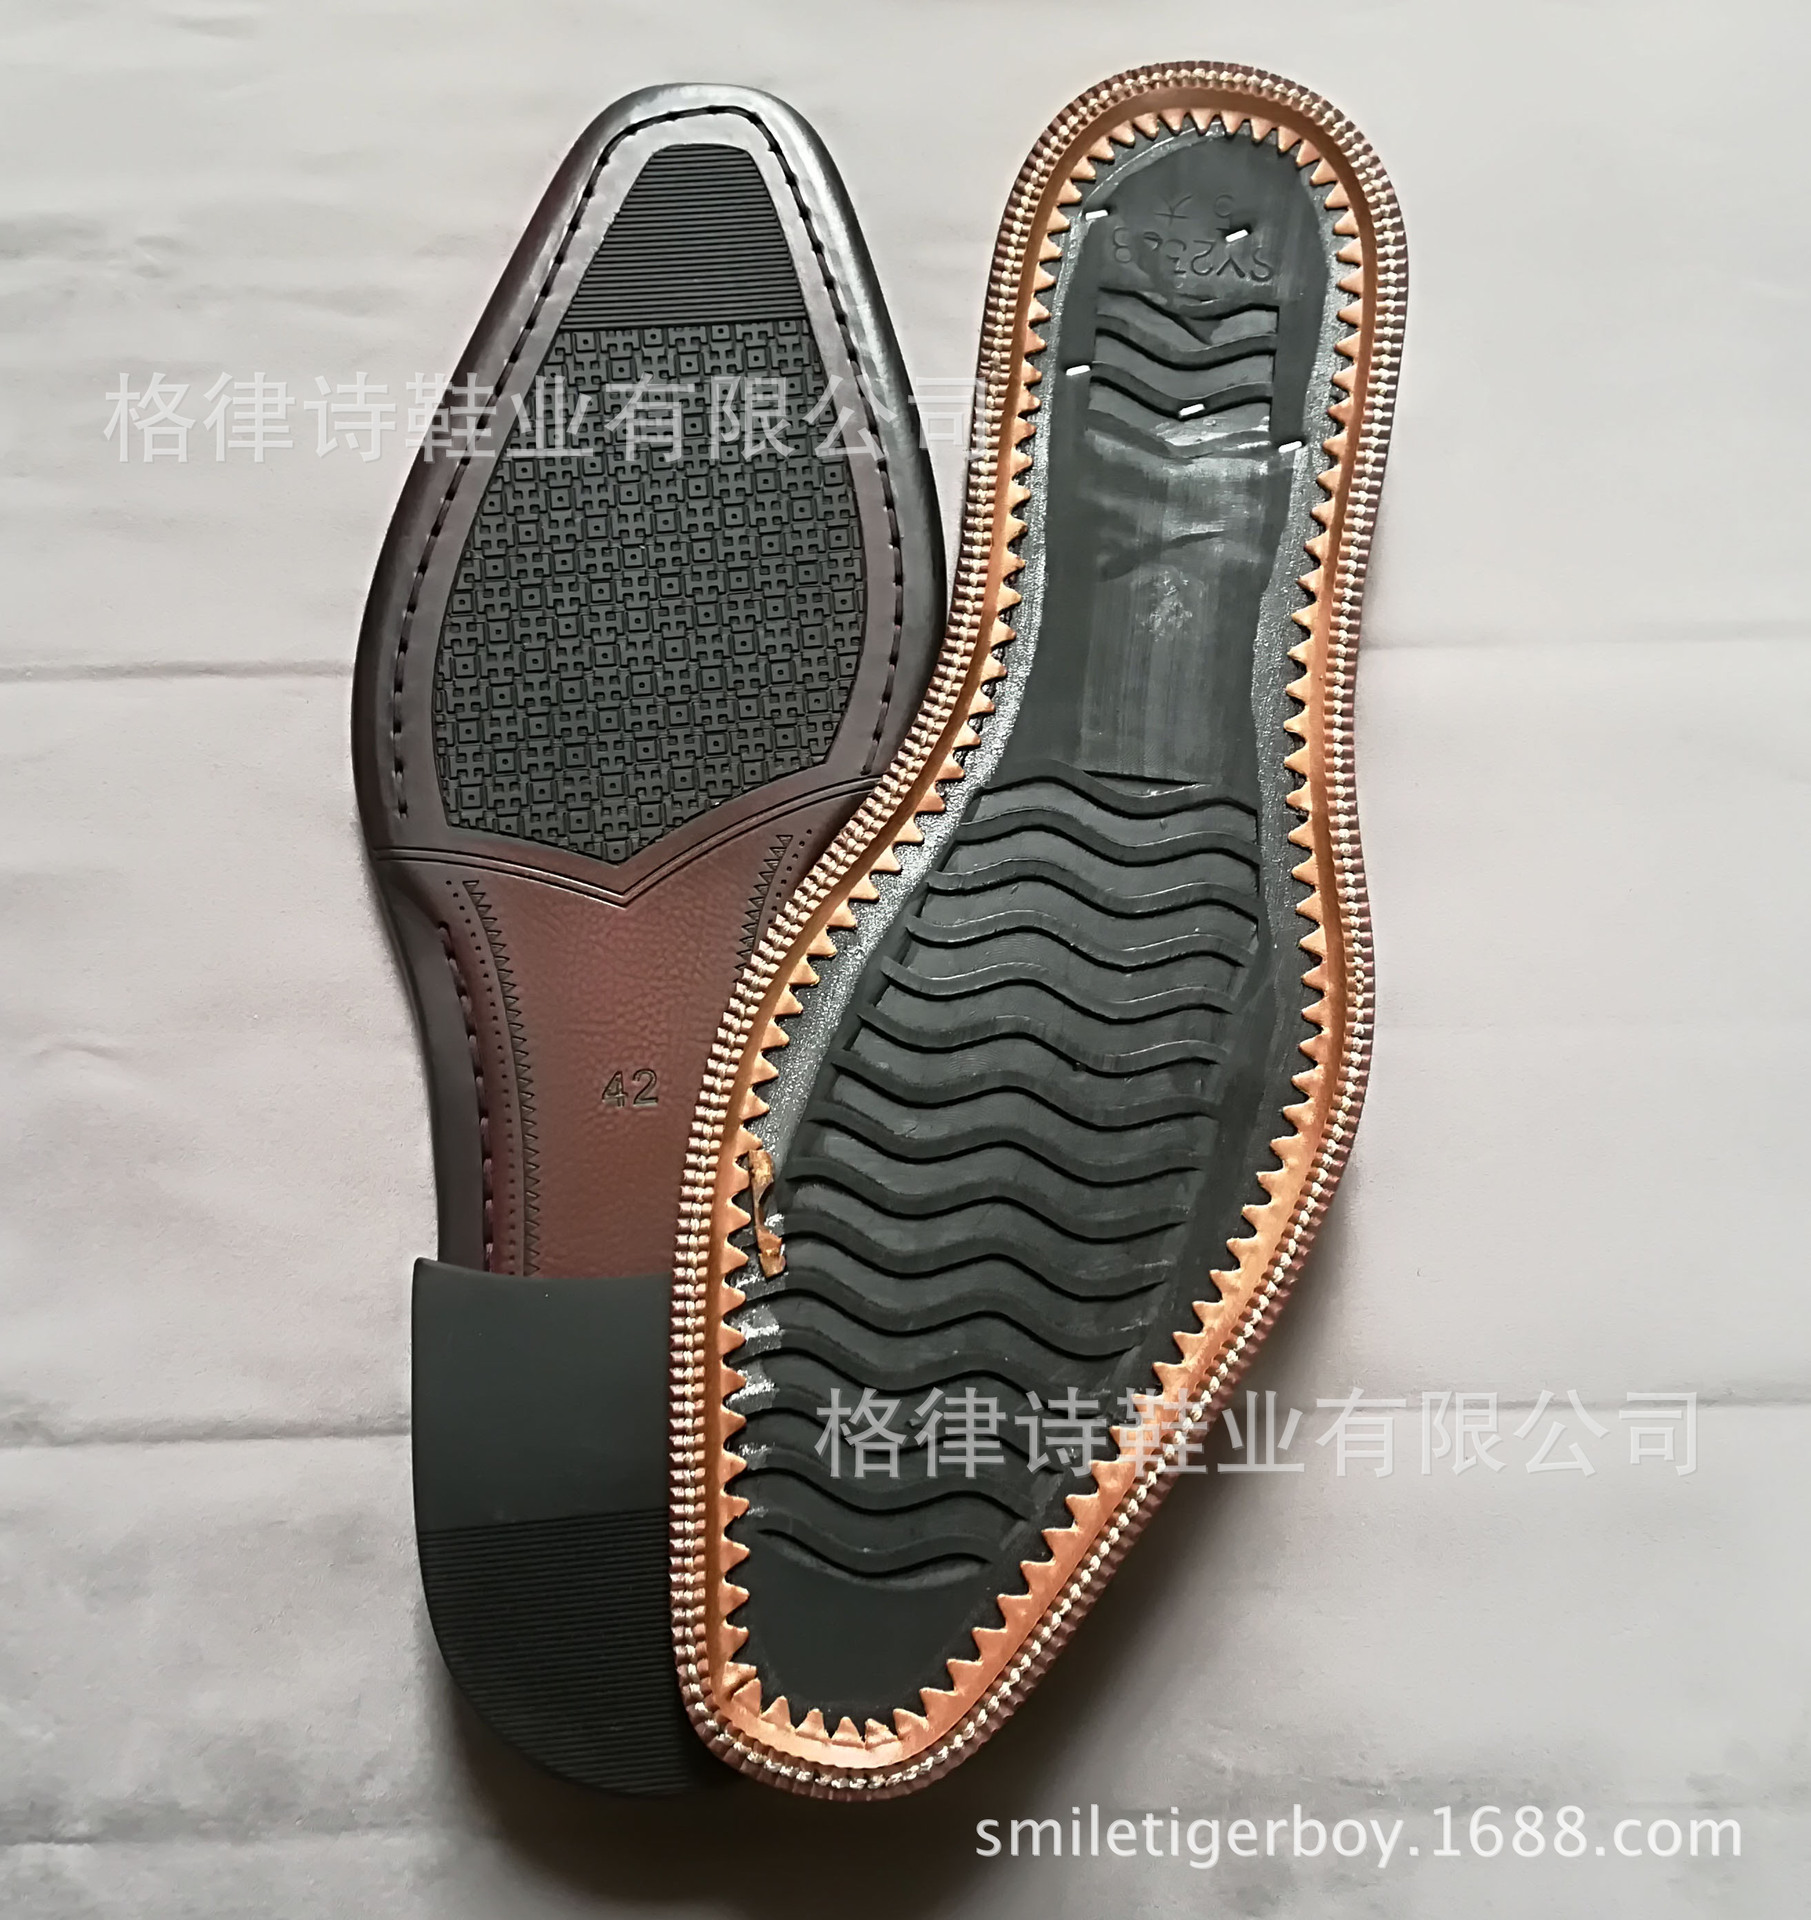 厂家直销 新款男式组装鞋底 组装外底 橡胶组合底